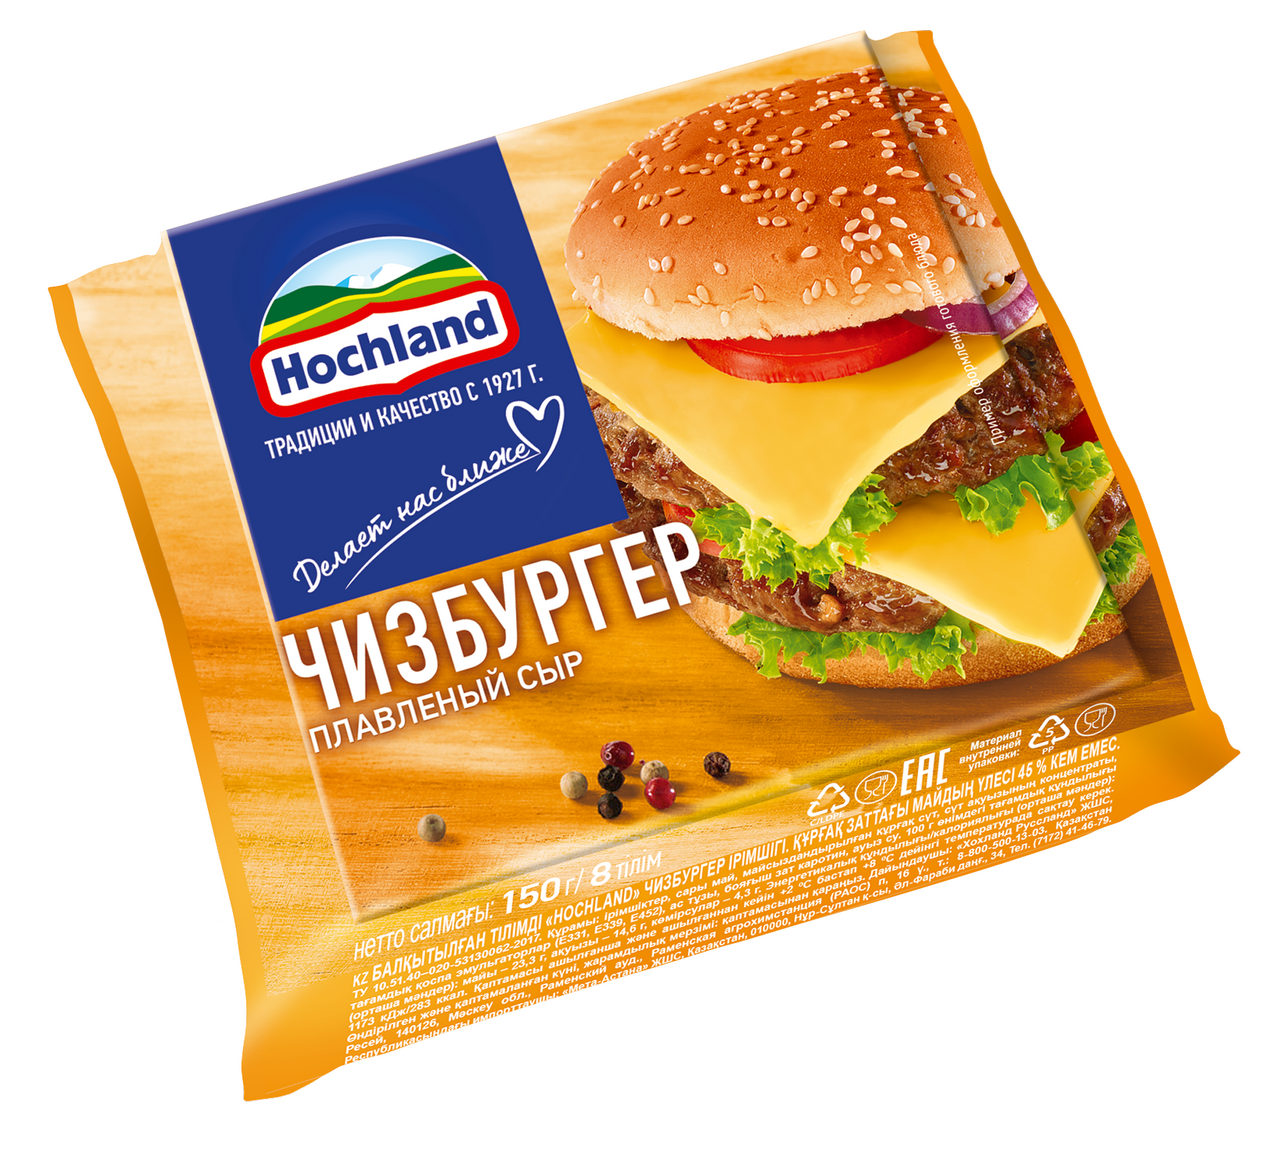 Сыр плавленый HOCHLAND тостовый чизбургер, 150г